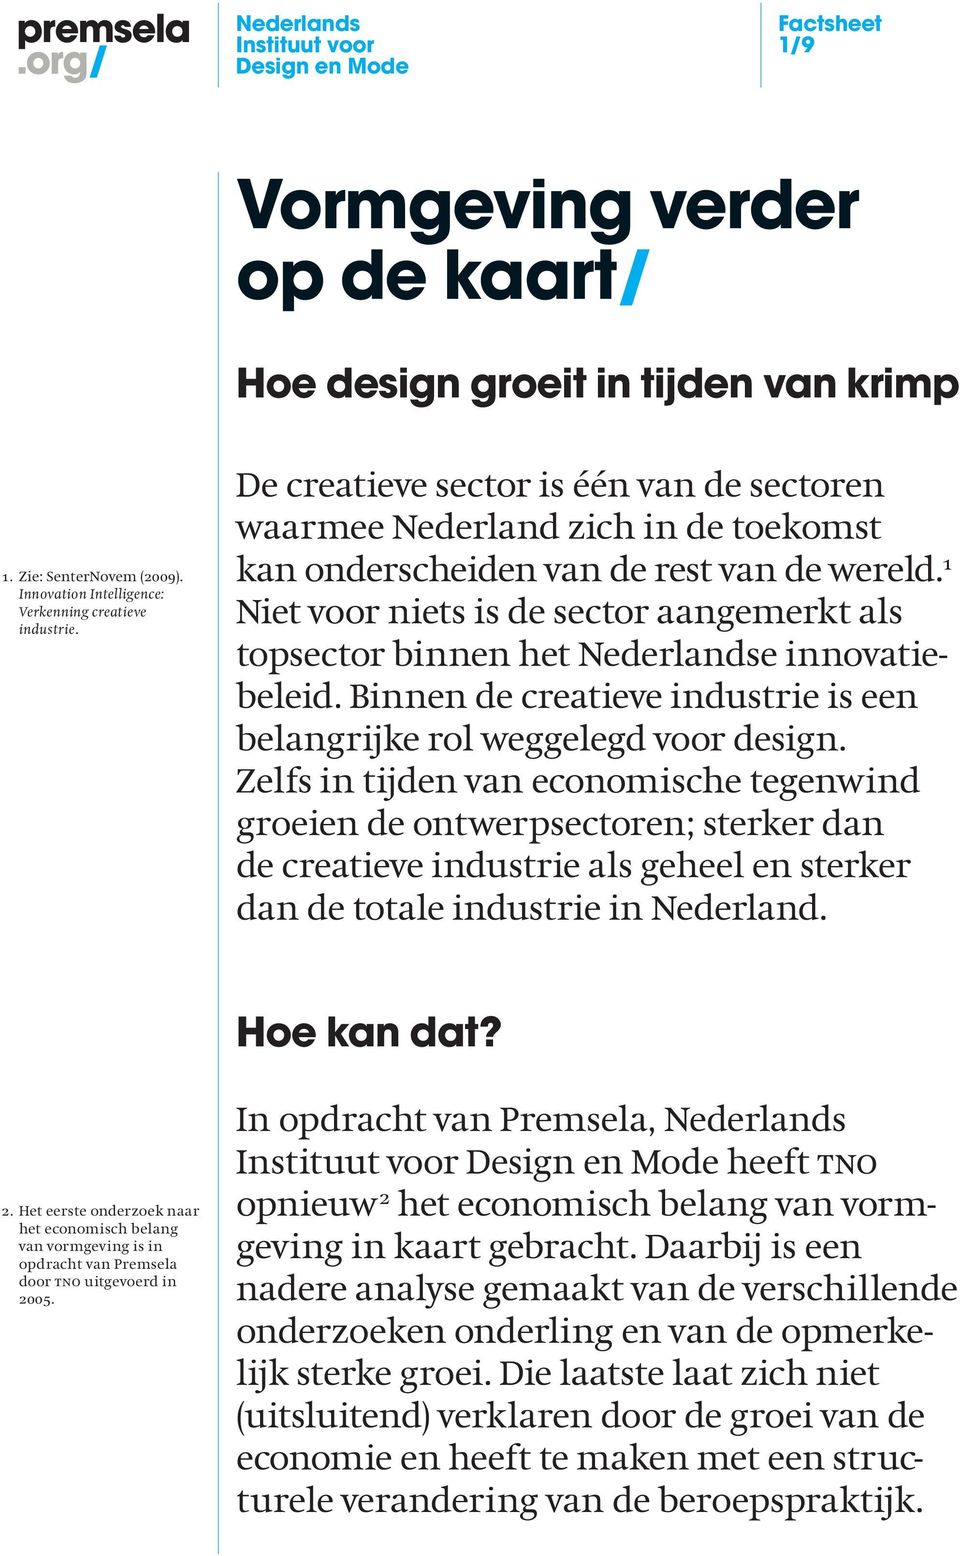 1 Niet voor niets is de sector aangemerkt als topsector binnen het Nederlandse innovatiebeleid. Binnen de creatieve industrie is een belangrijke rol weggelegd voor design.